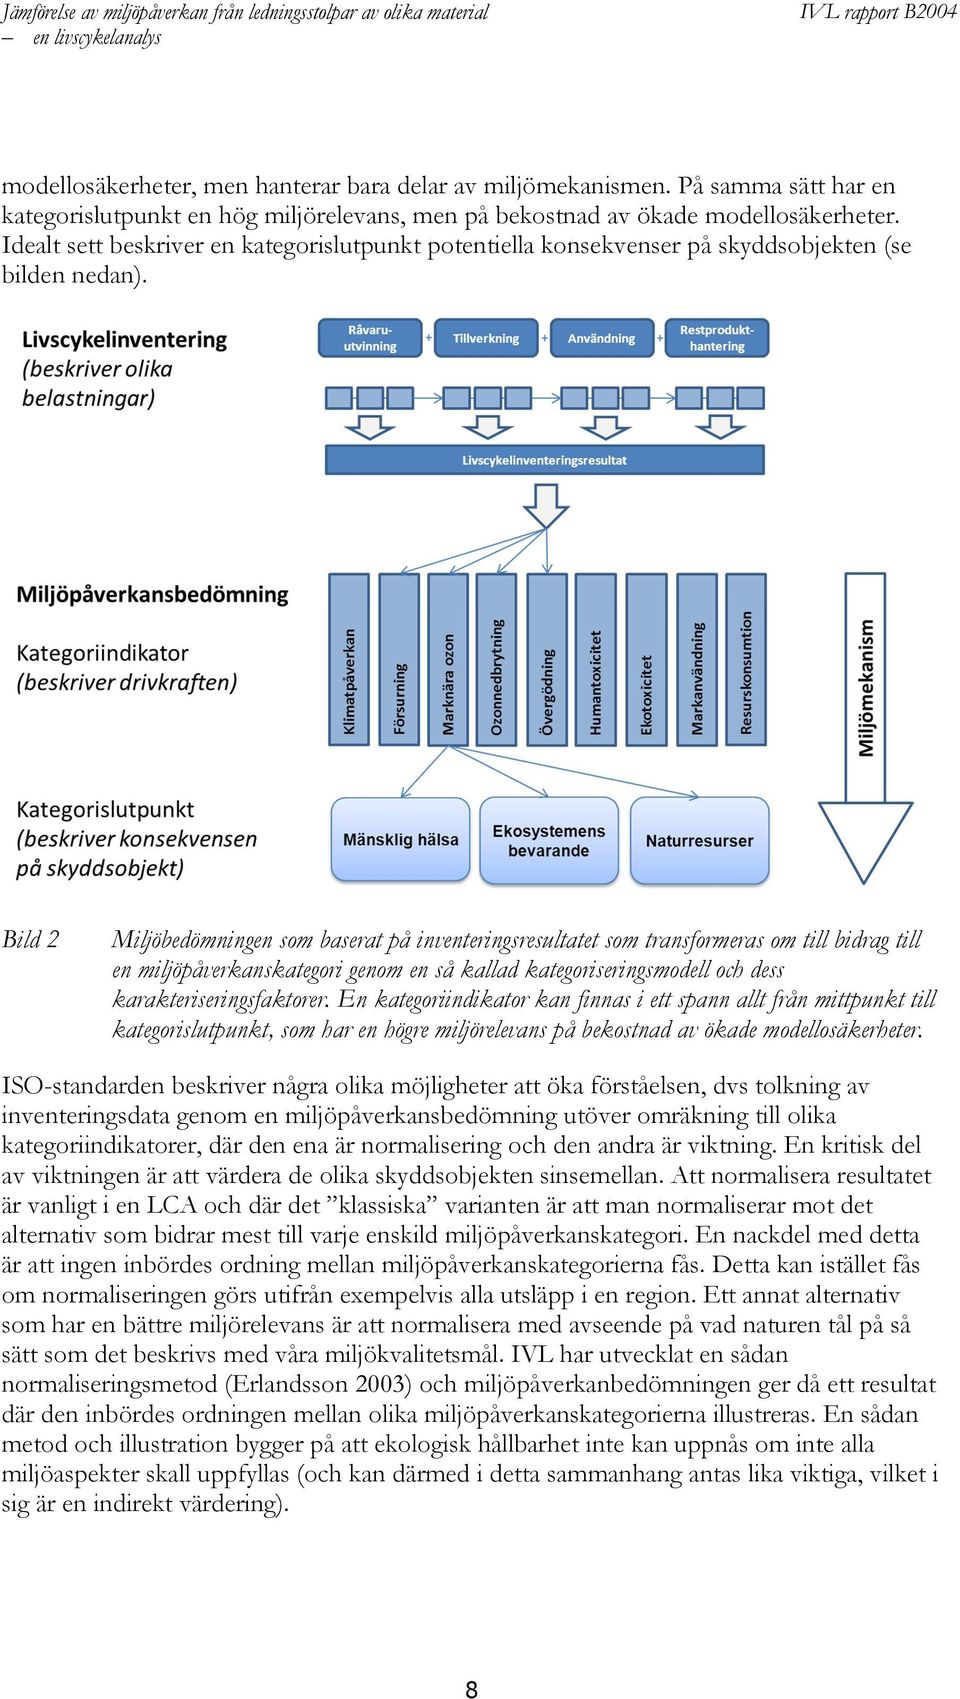 Bild 2 Miljöbedömningen som baserat på inventeringsresultatet som transformeras om till bidrag till en miljöpåverkanskategori genom en så kallad kategoriseringsmodell och dess